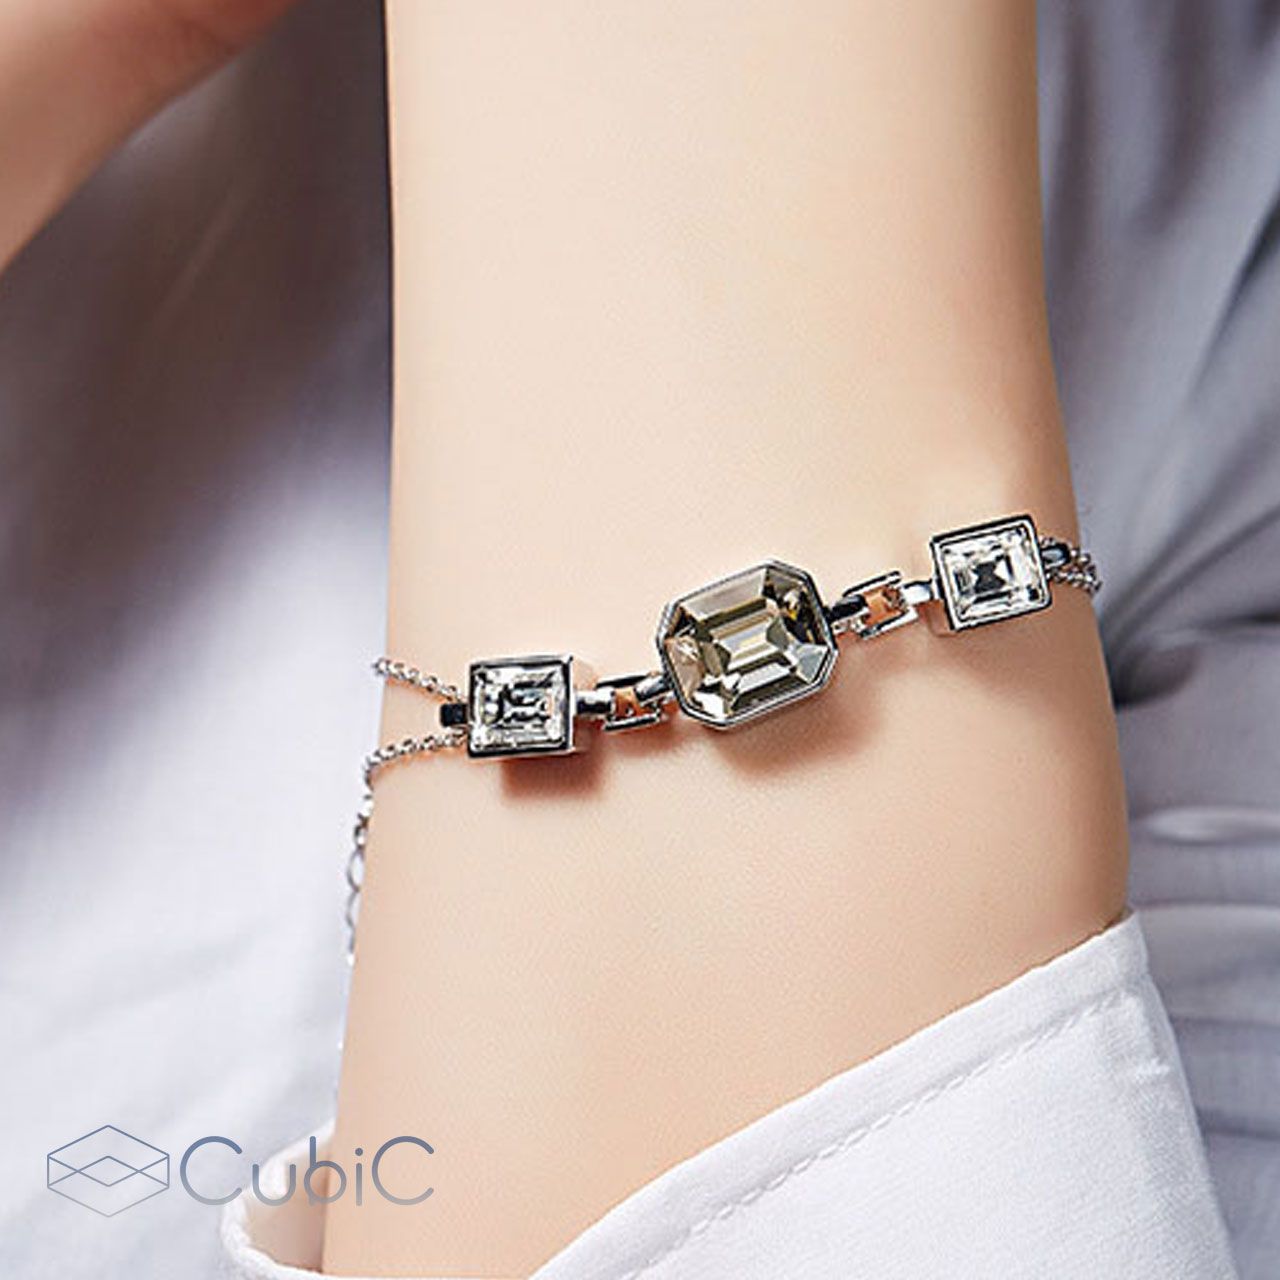 دستبند زنانه کوبیک مدل QB-5810 -  - 6